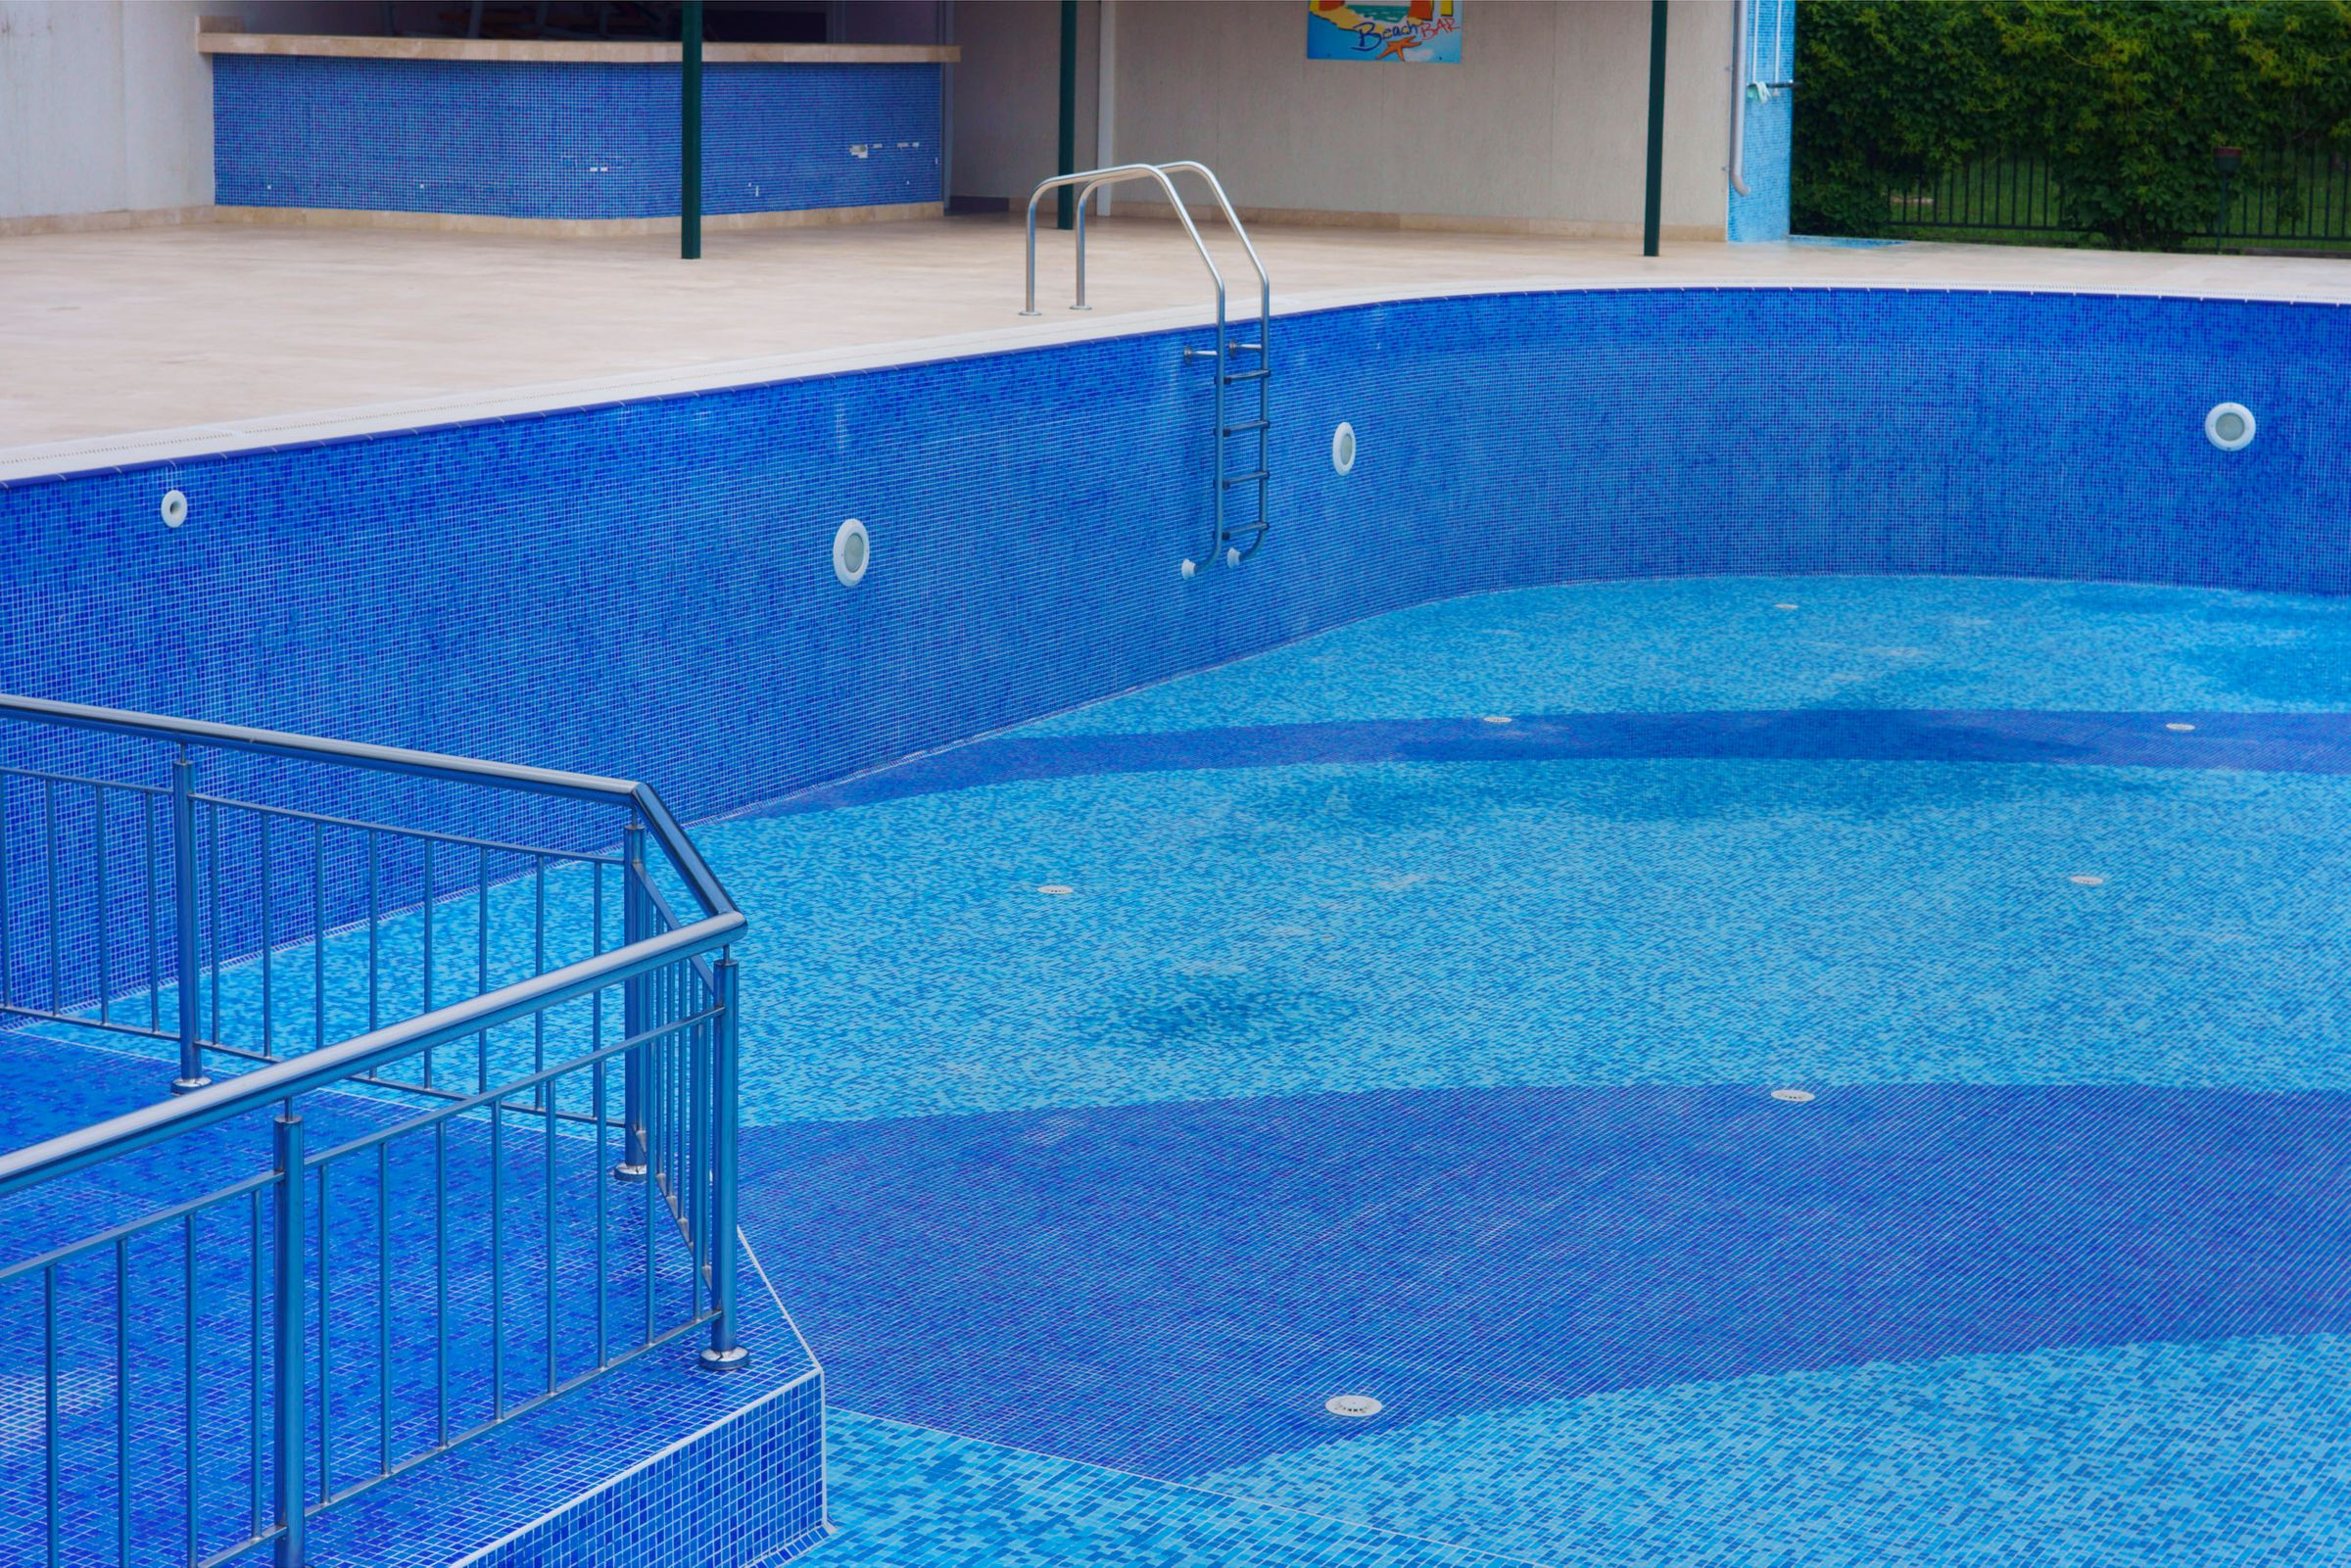 Very Blue Pool